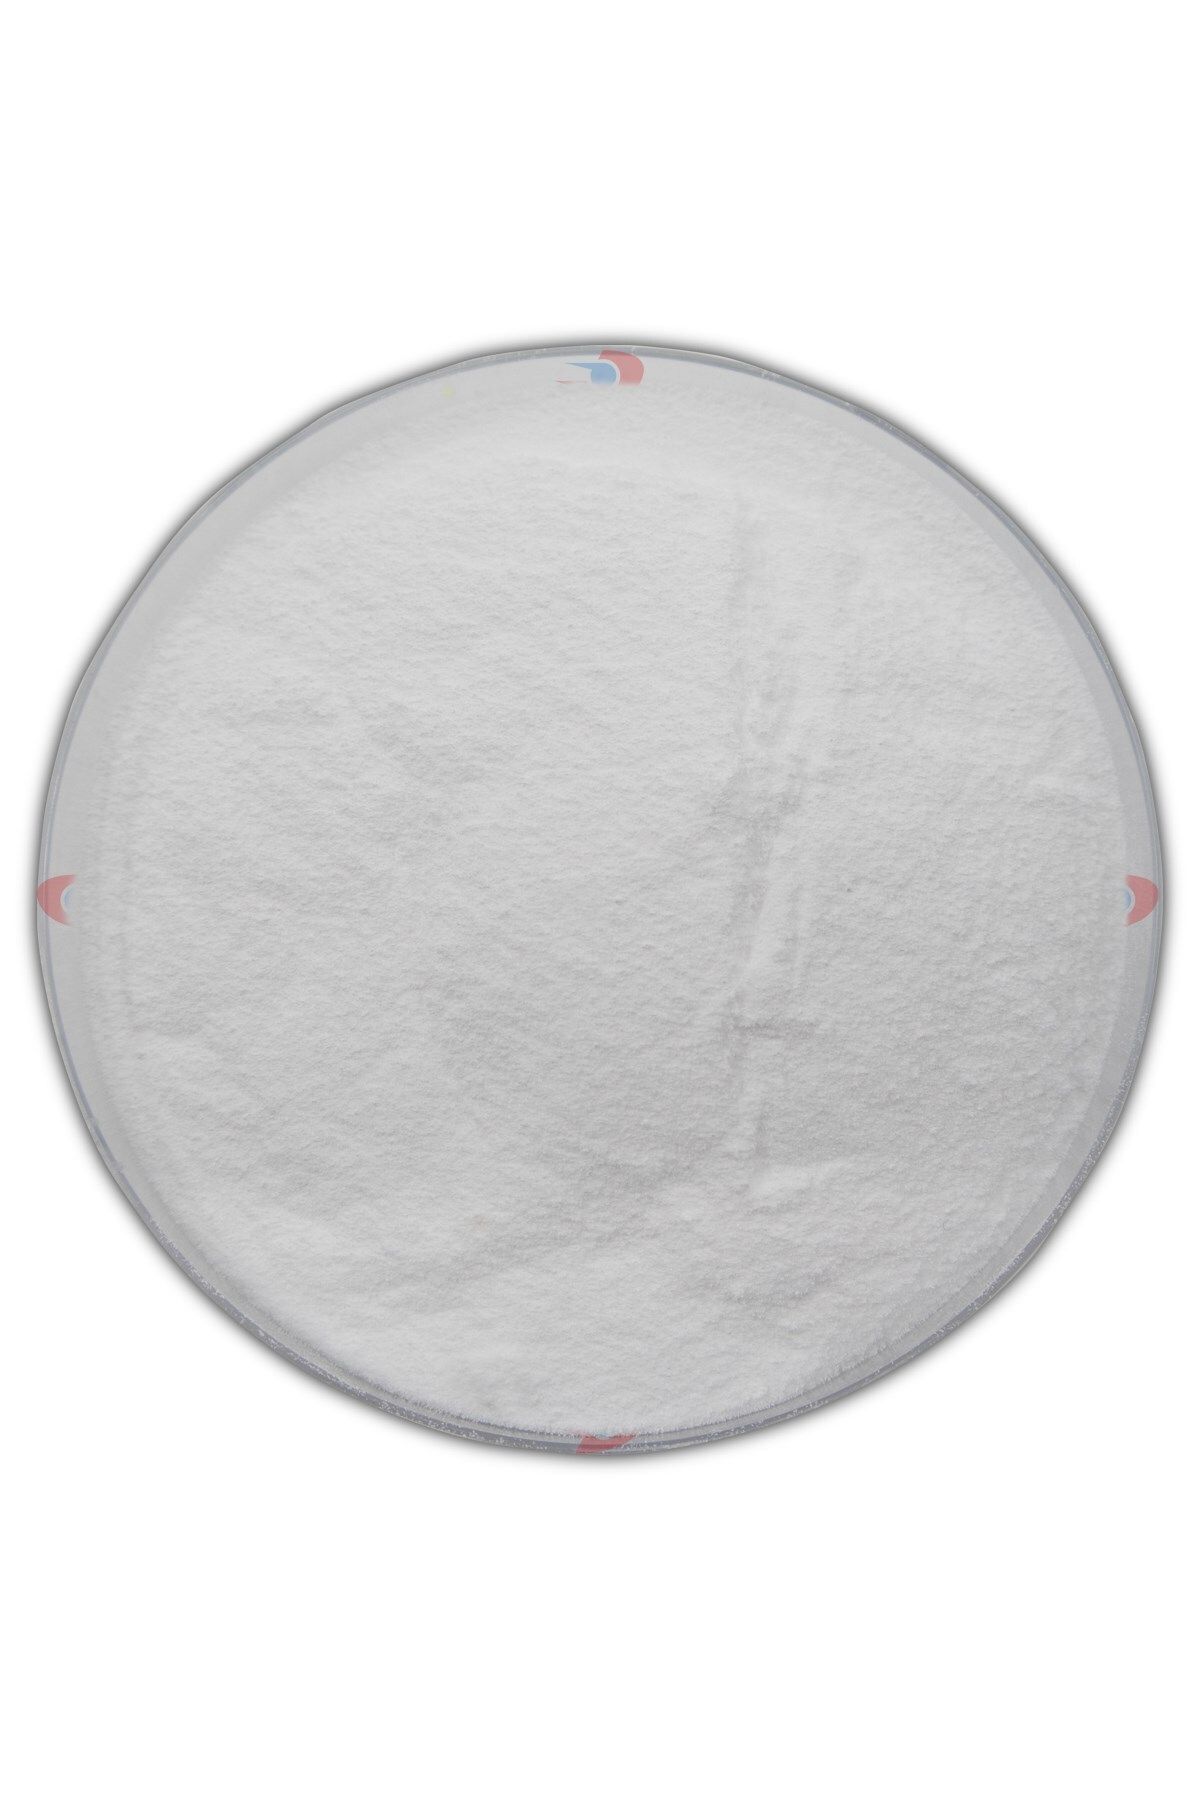 Dolar Kimya Hafif Soda | 25.00 kg (Sodyum Karbonat,Çamaşır Sodası,Soda Külü)